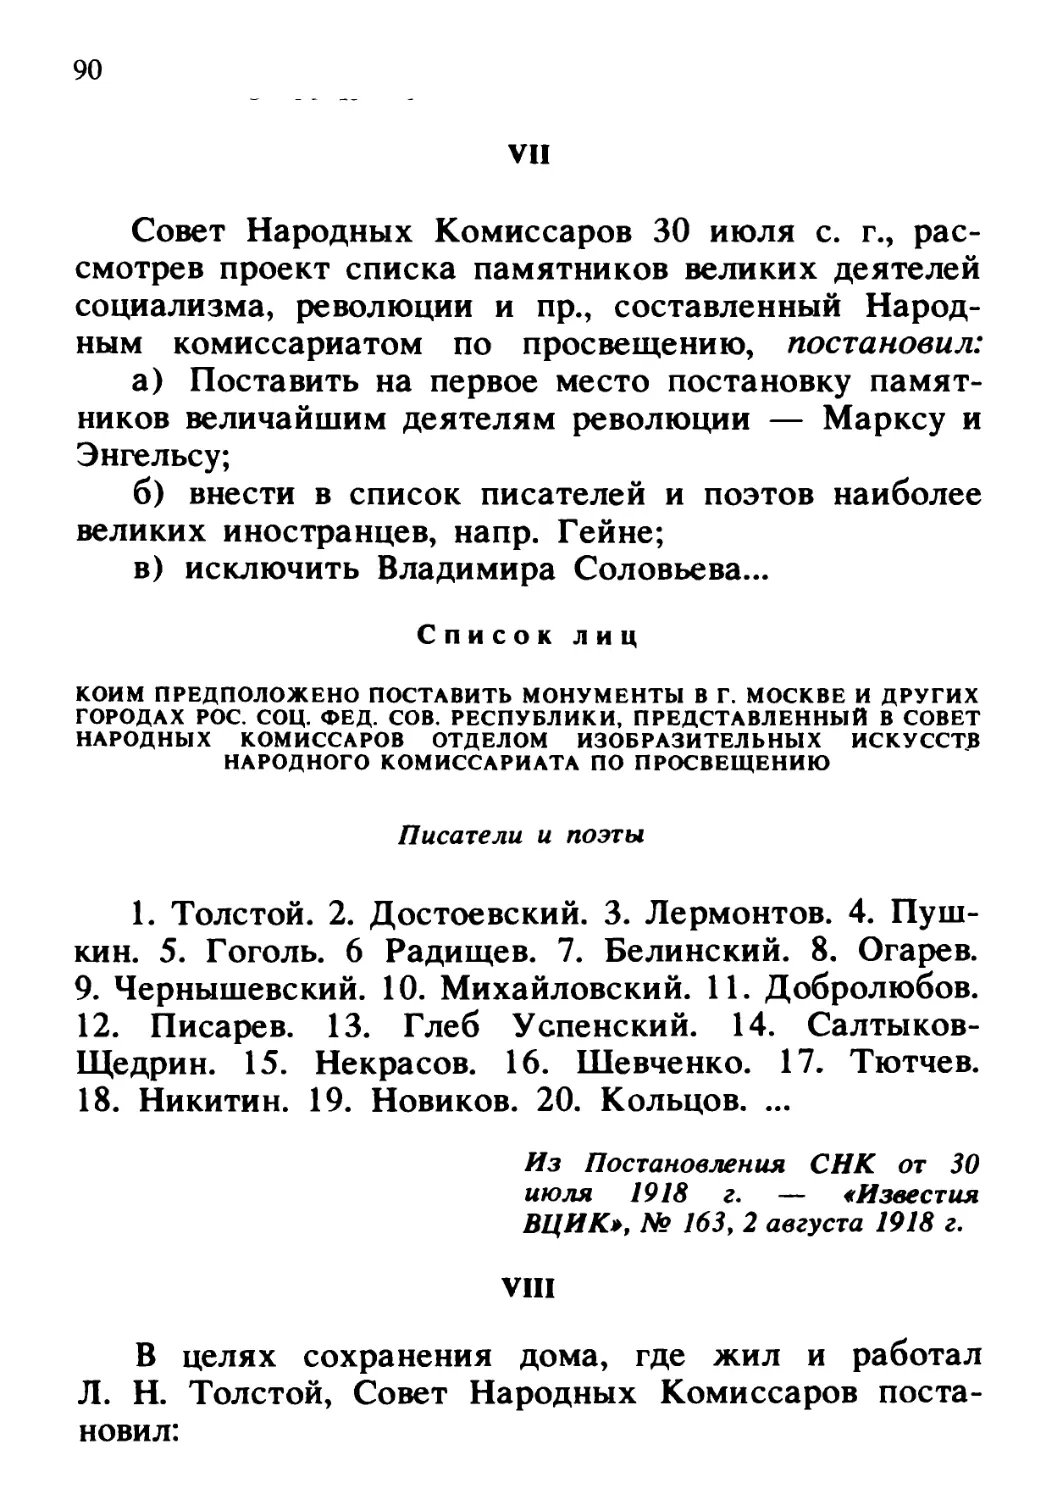 Книги Л.Н.Толстого и о нем в личной библиотеке В.И.Ленина